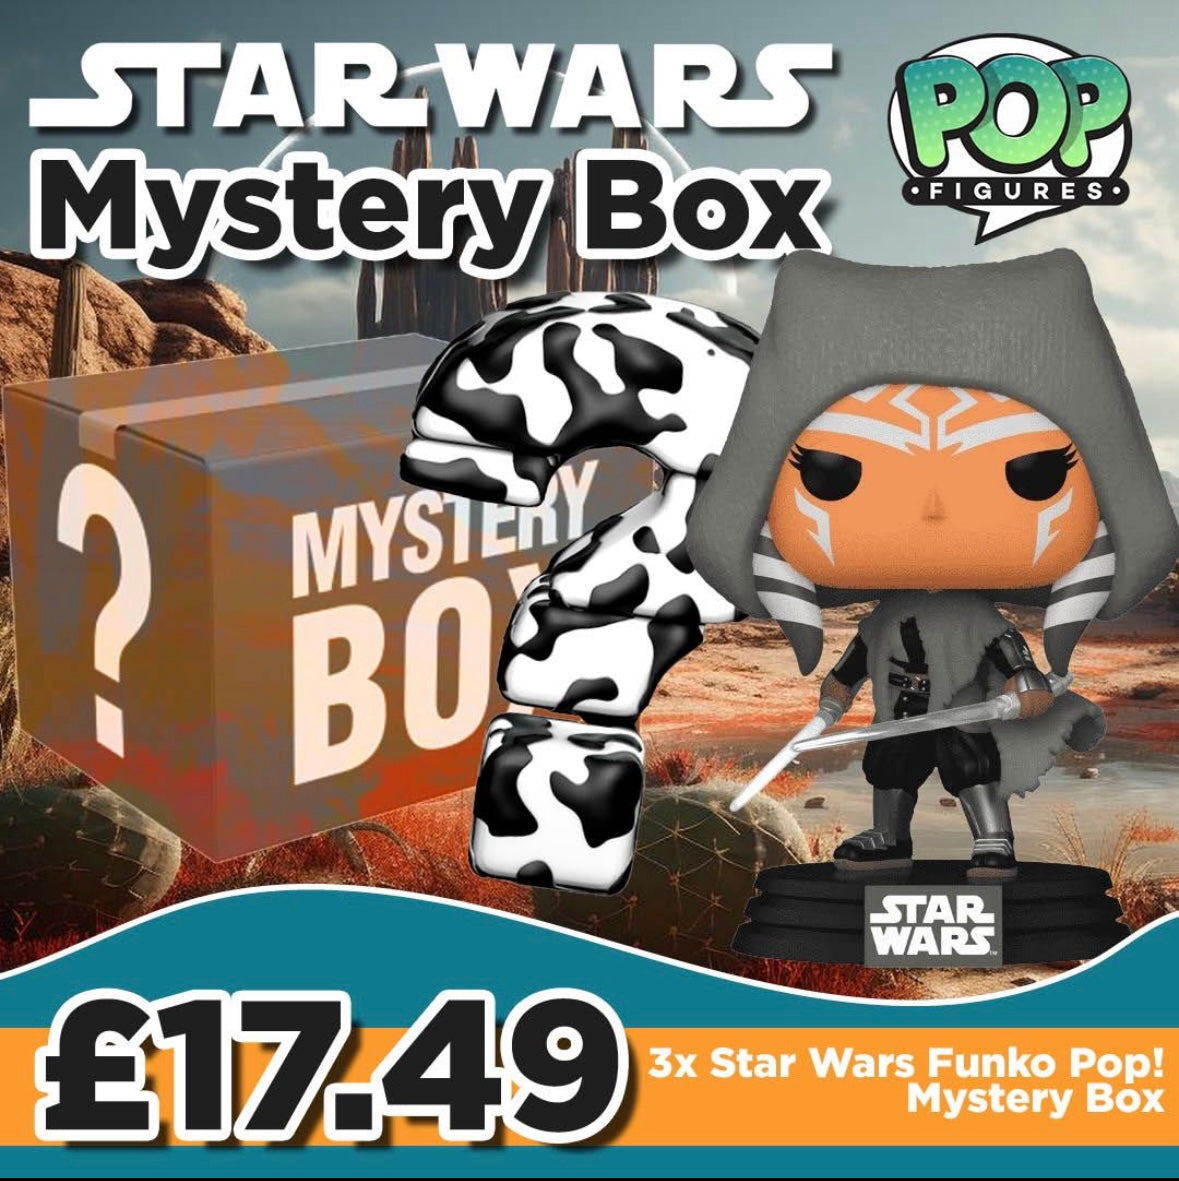 3 Star Wars Funko Pop Mystery Box!